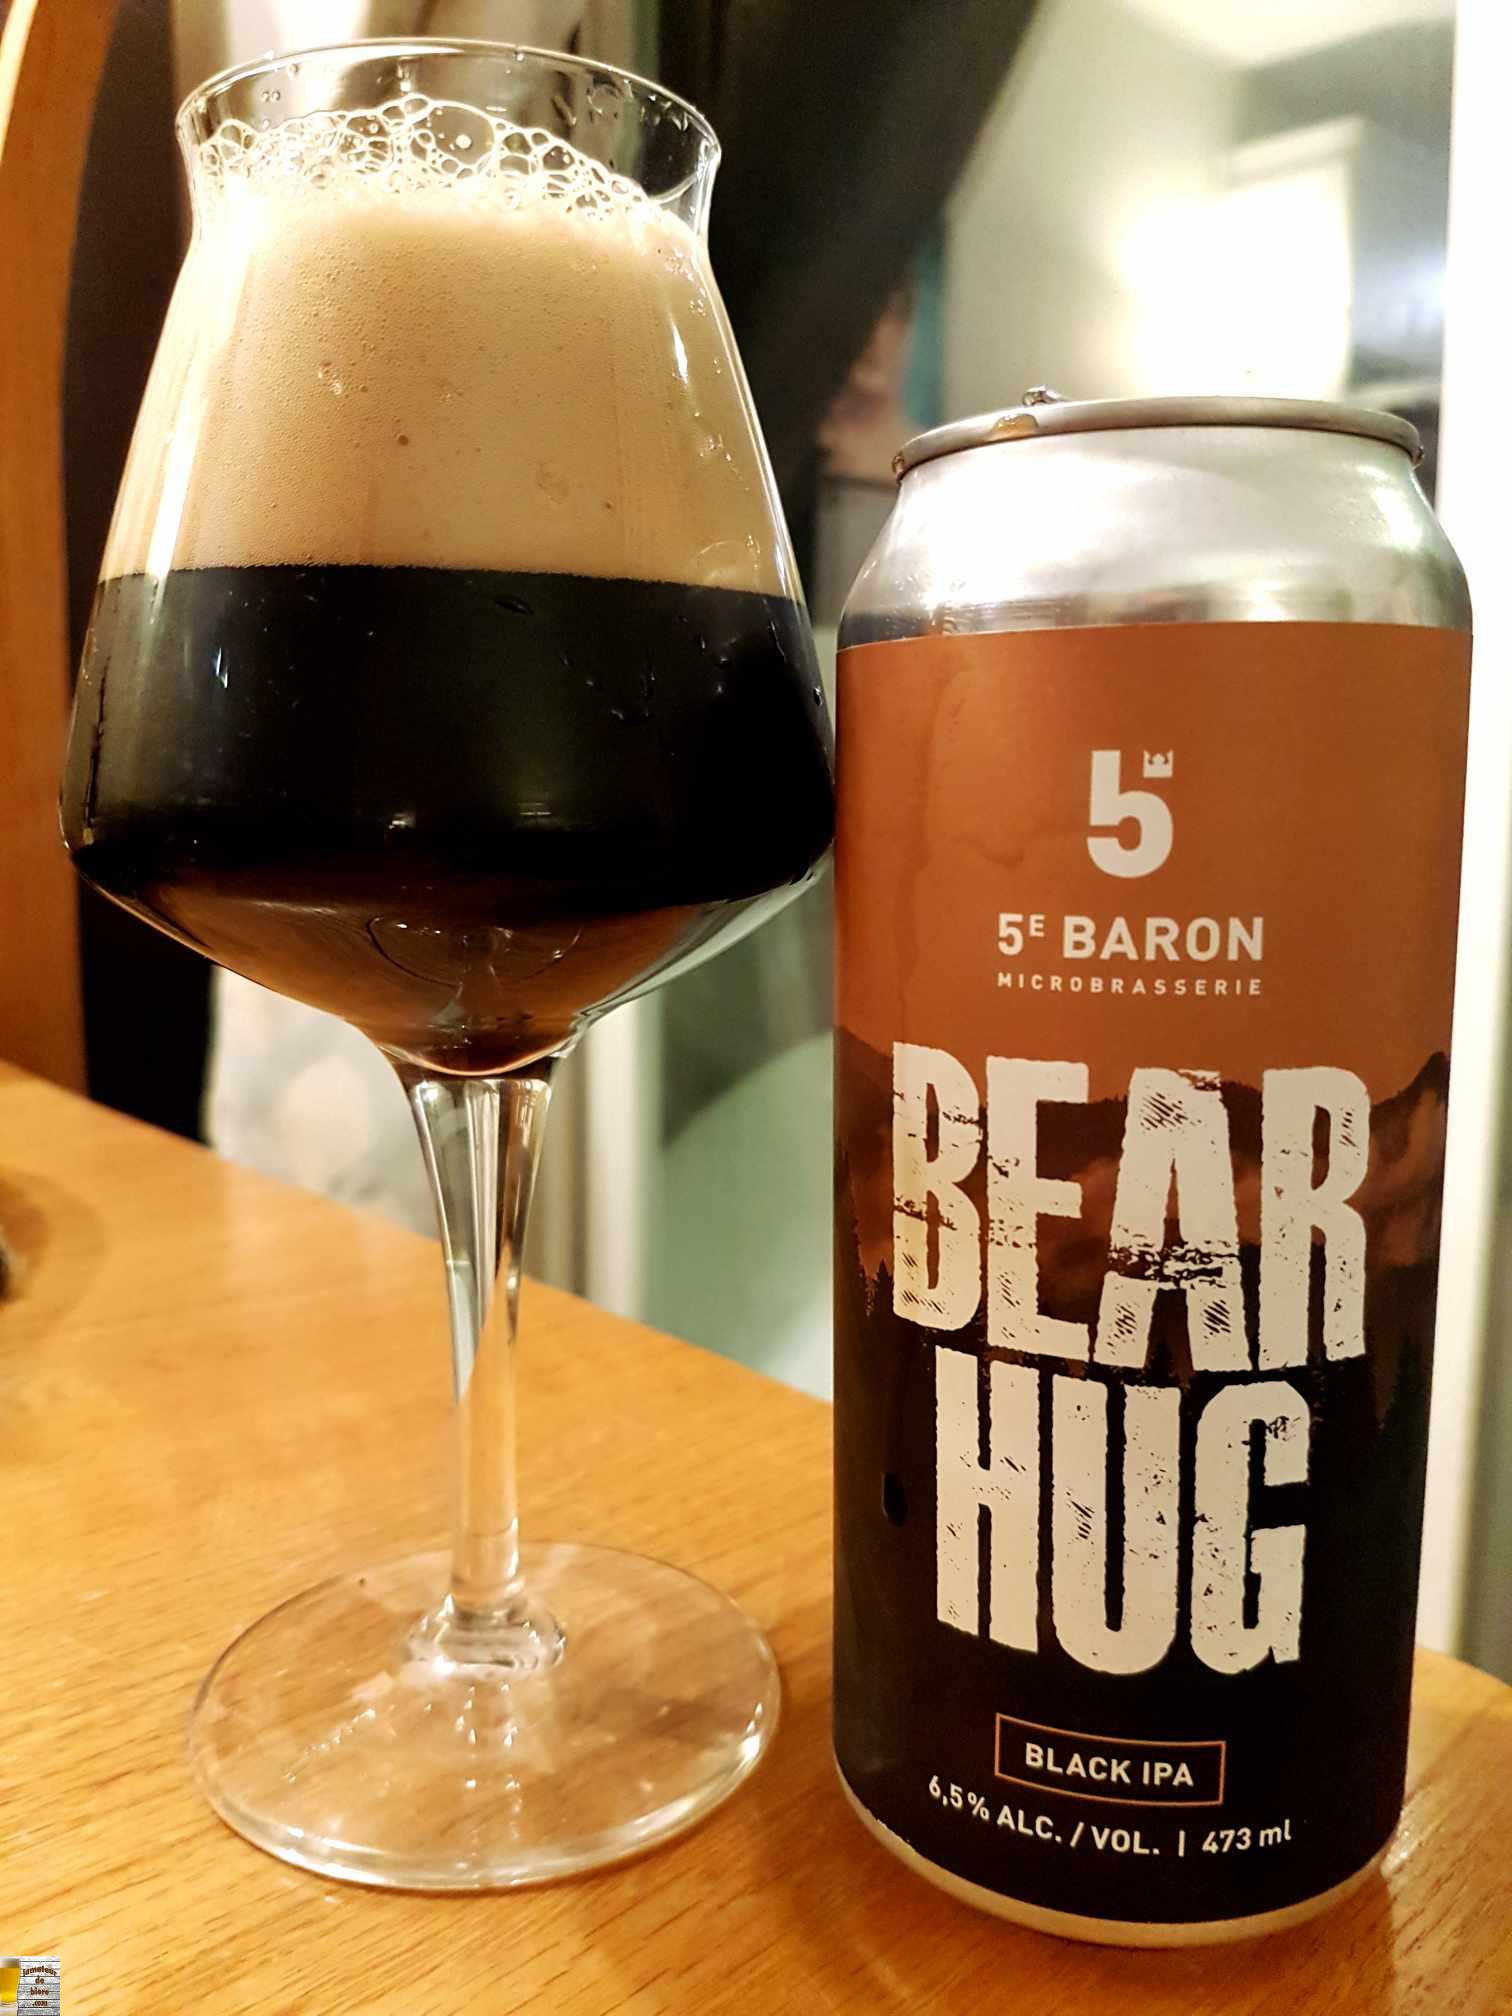 Bear Hug de 5e Baron